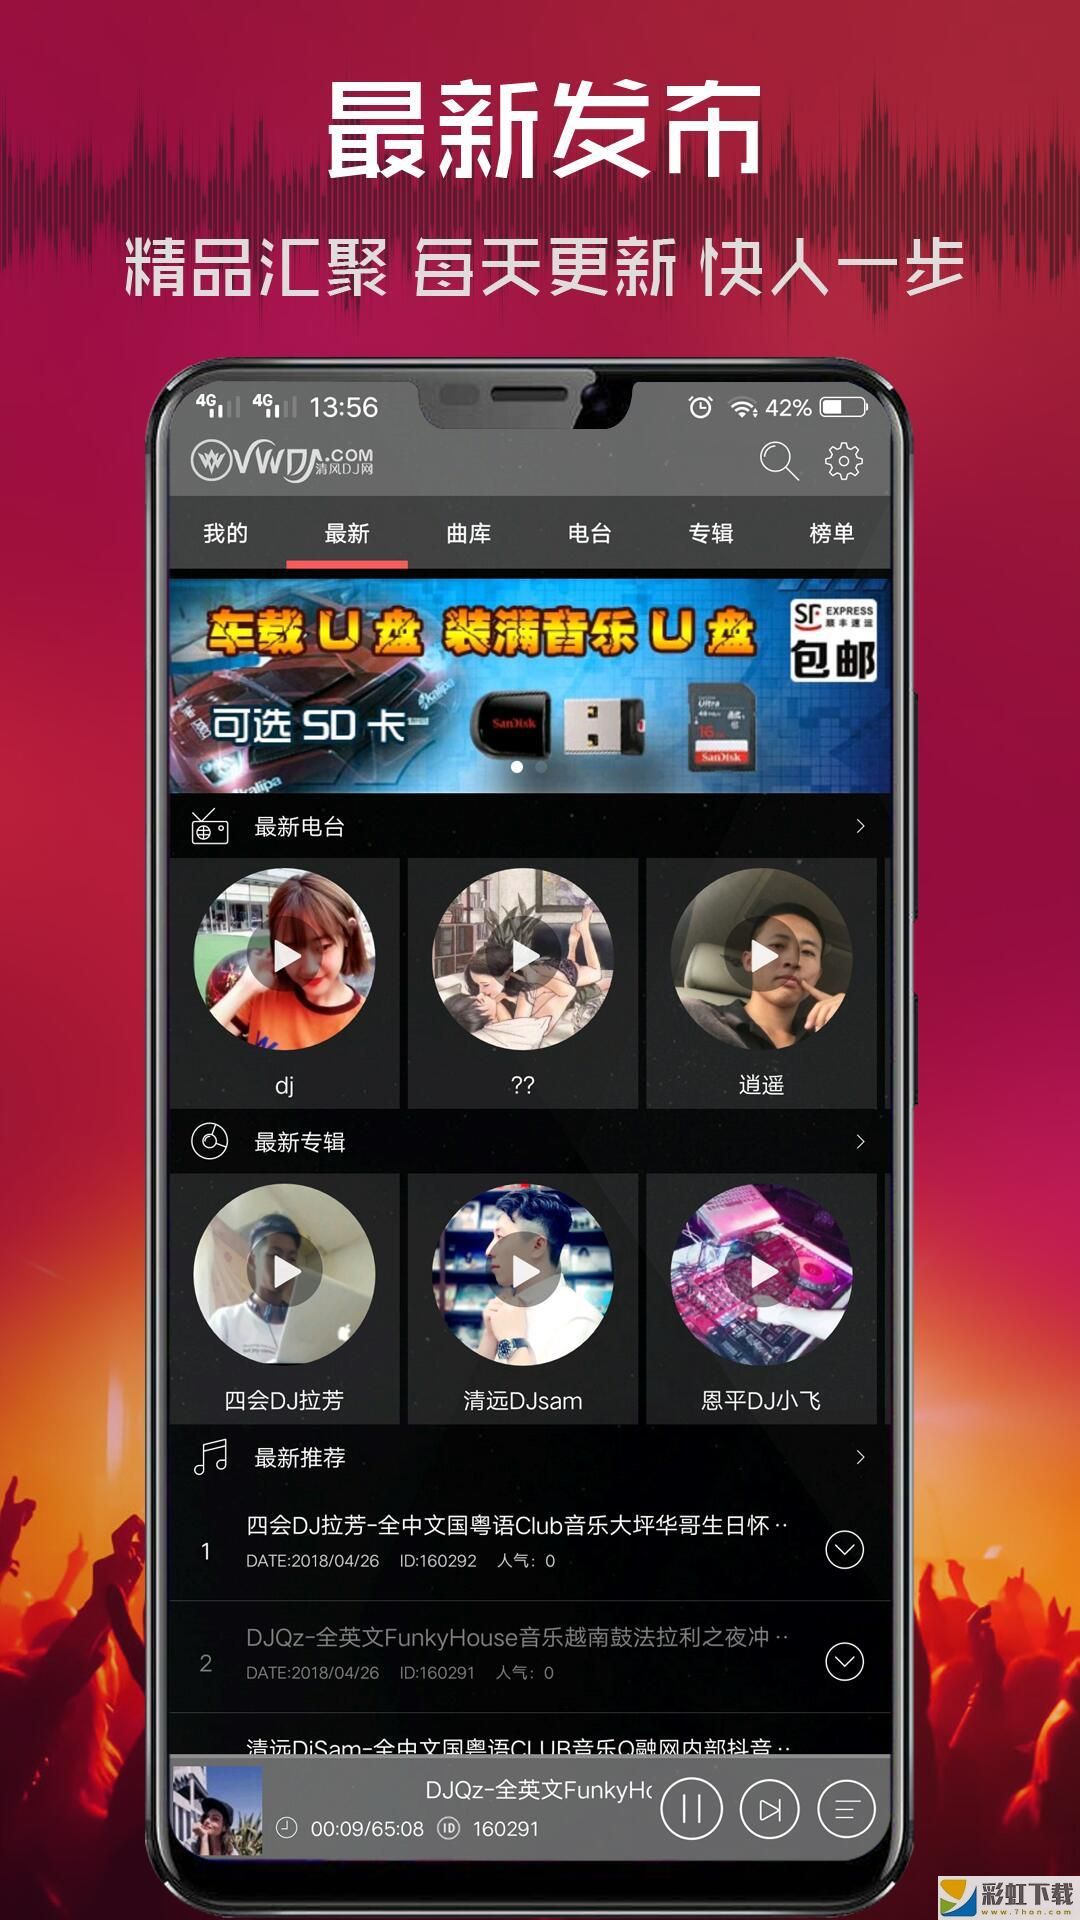 清风dj音乐网官方客户端v2.7.9手机版预约